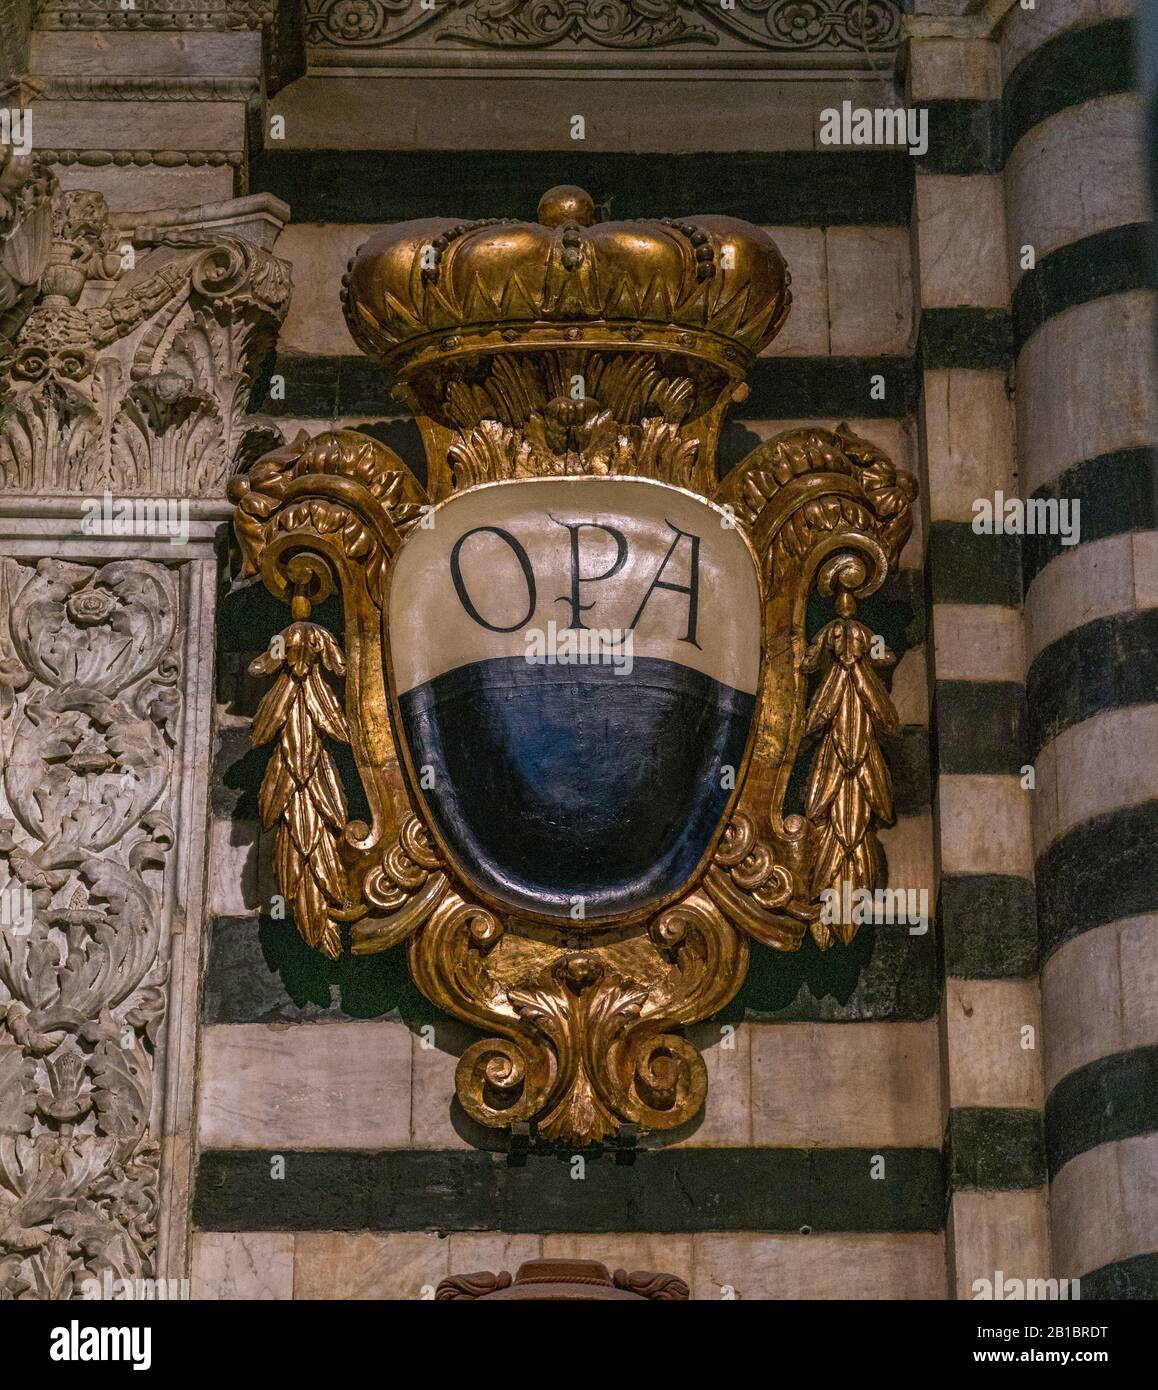 OPA escudo de armas en el Duomo de Siena, Toscana, Italia. Foto de stock